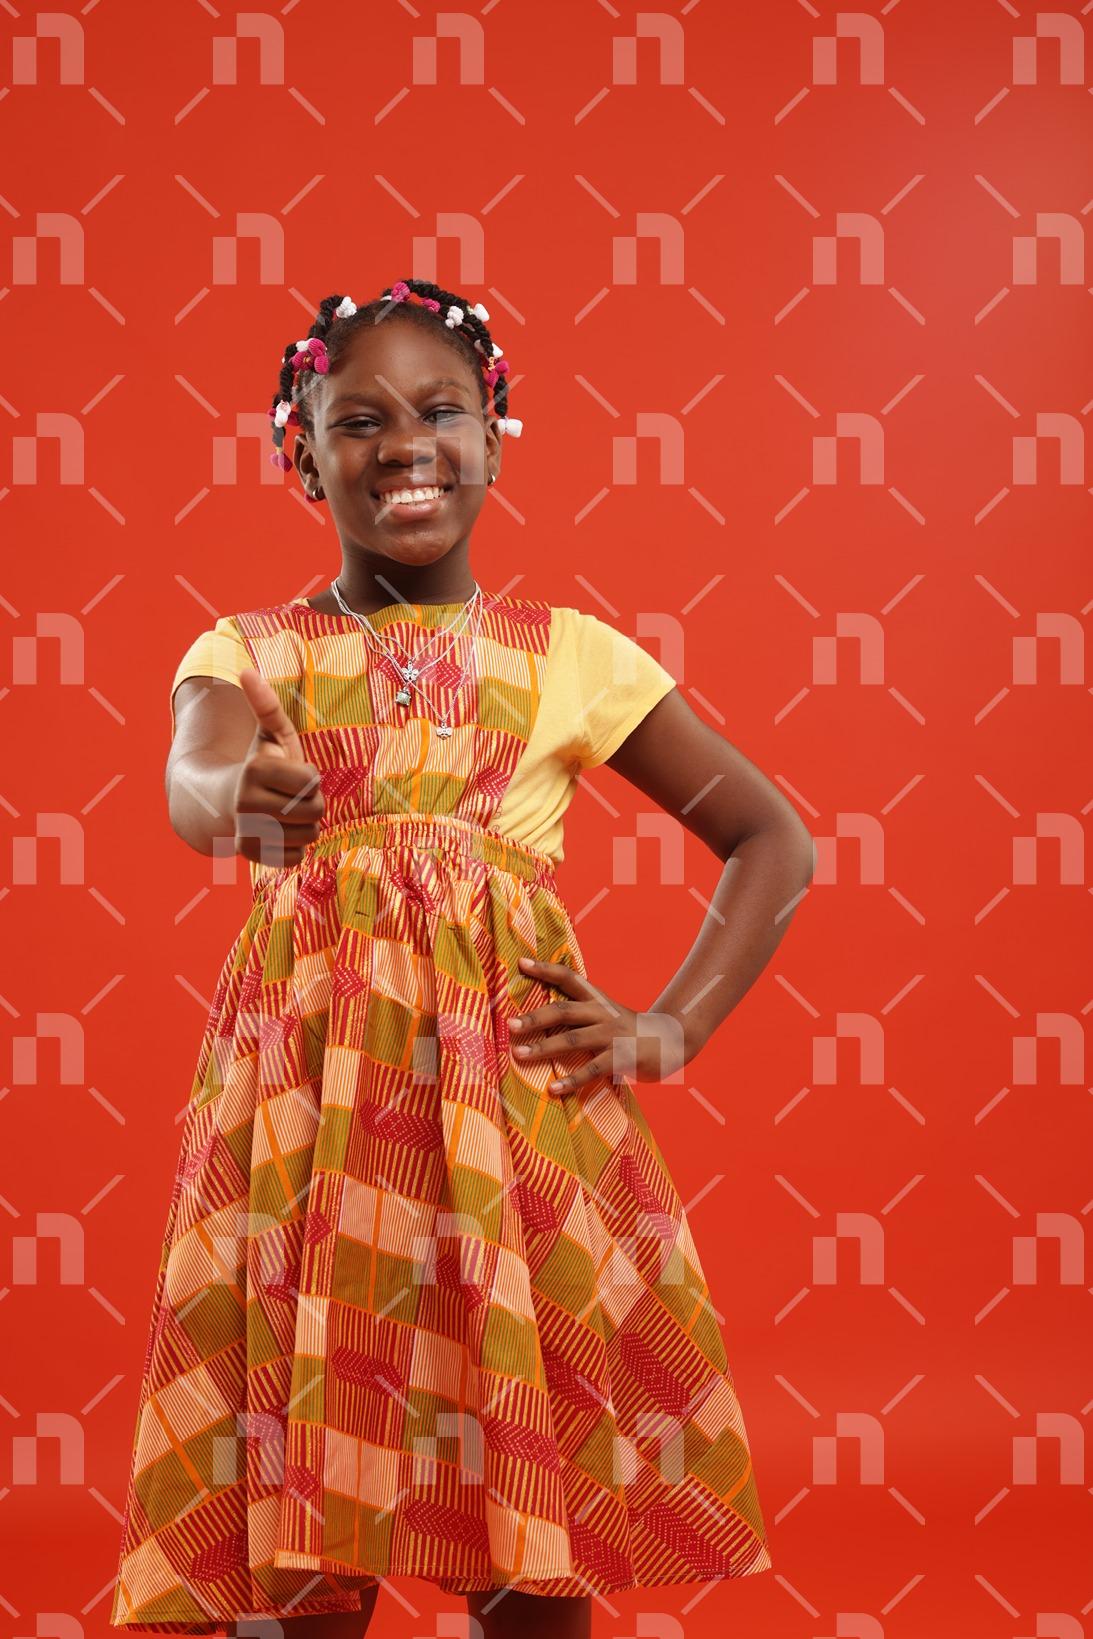 fillette-africaine-moderne-vetue-dune-robe-de-couleur-orange-posant-le-pouce-droit-leve-et-un-sourire-pour-une-photo-studio